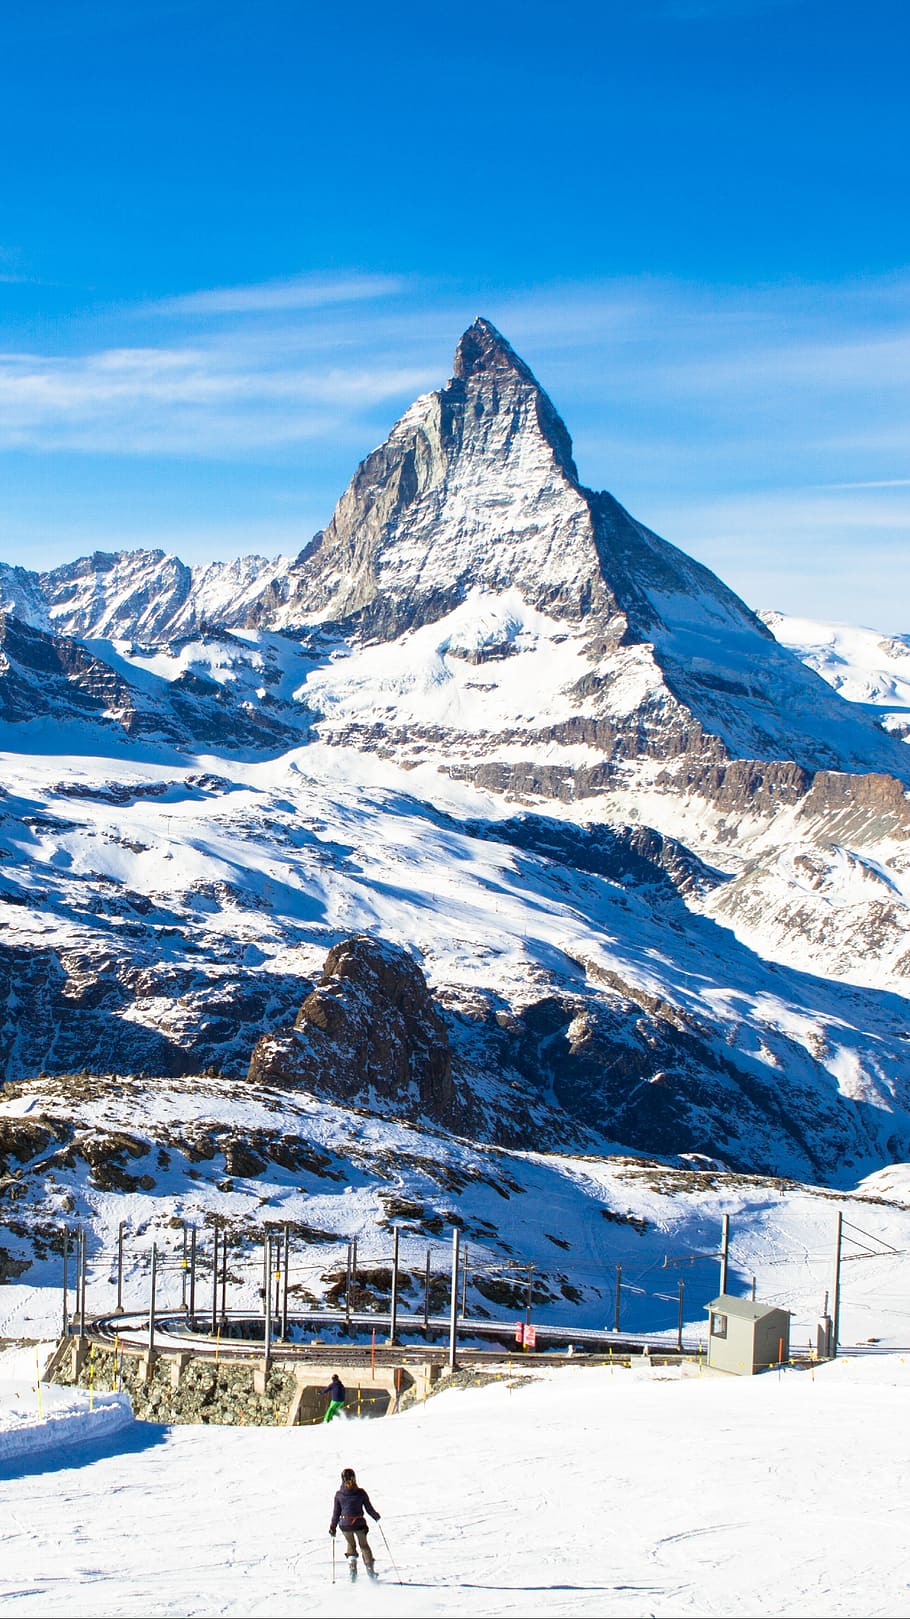 Matterhorn Glacier 1080p 2k 4k 5k Hd Wallpapers Free Download Wallpaper Flare